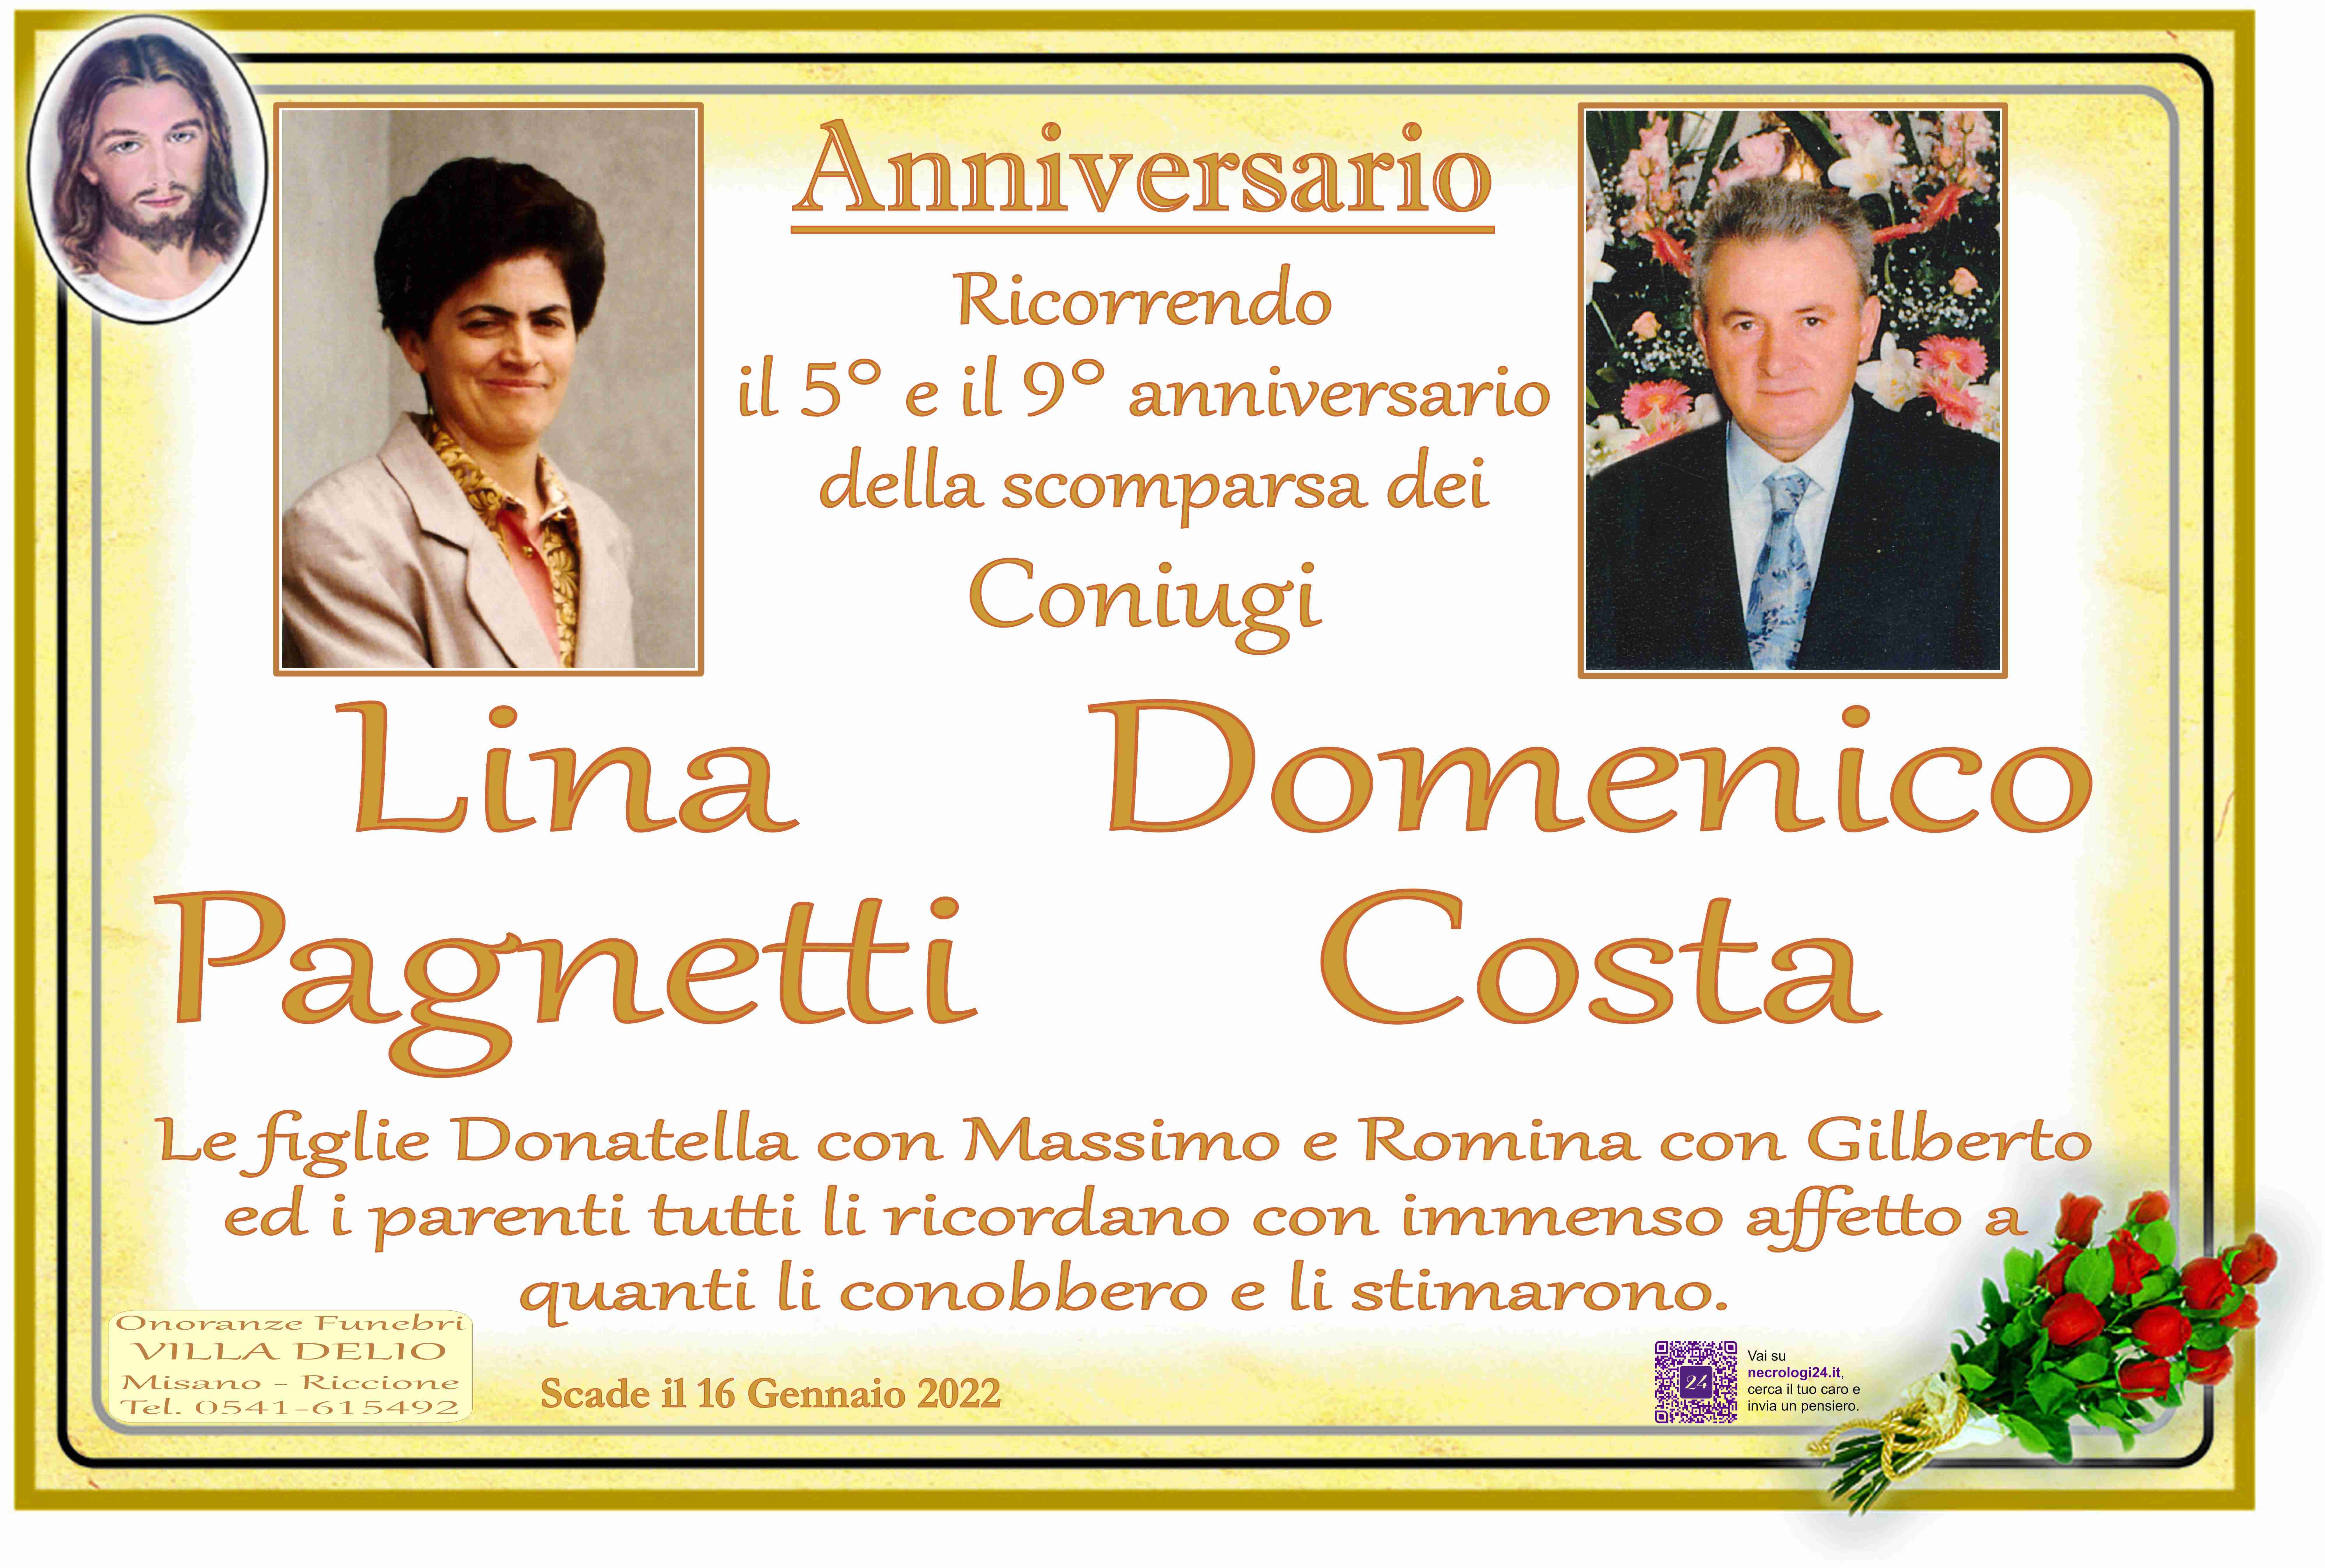 Lina Pagnetti e Domenico Costa